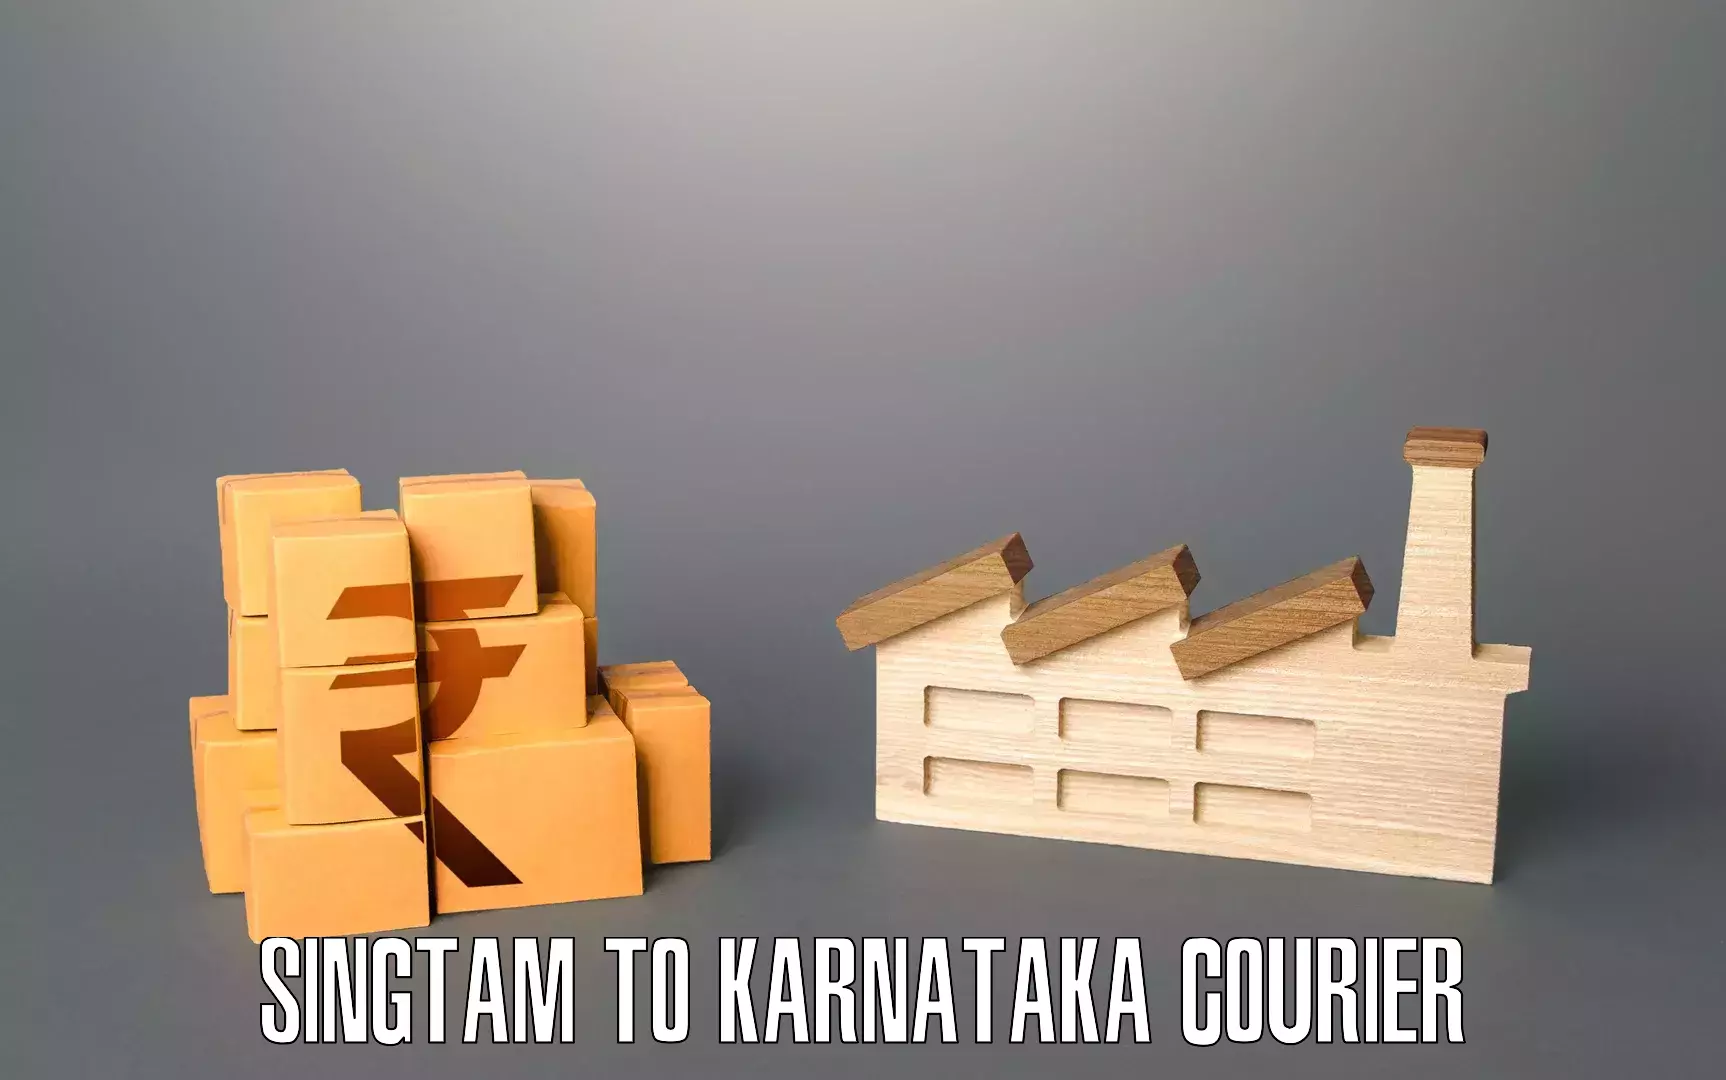 Advanced moving solutions Singtam to Karnataka